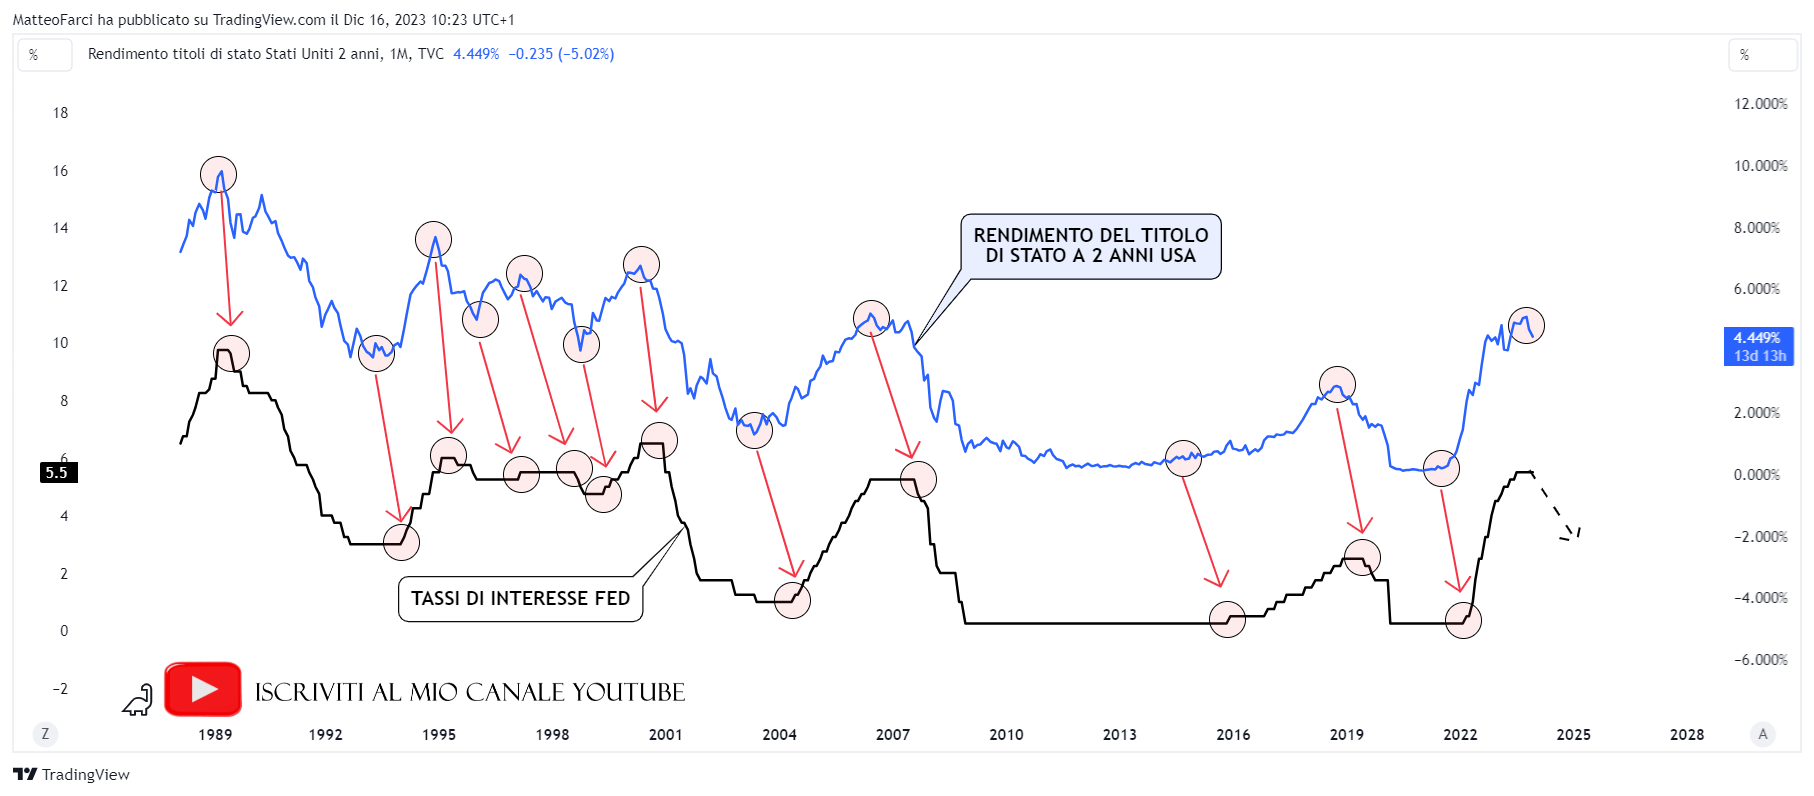 La correlazione positiva tra il rendimento a 2 anni statunitense e i tassi di interesse della FED. Grafico mensile